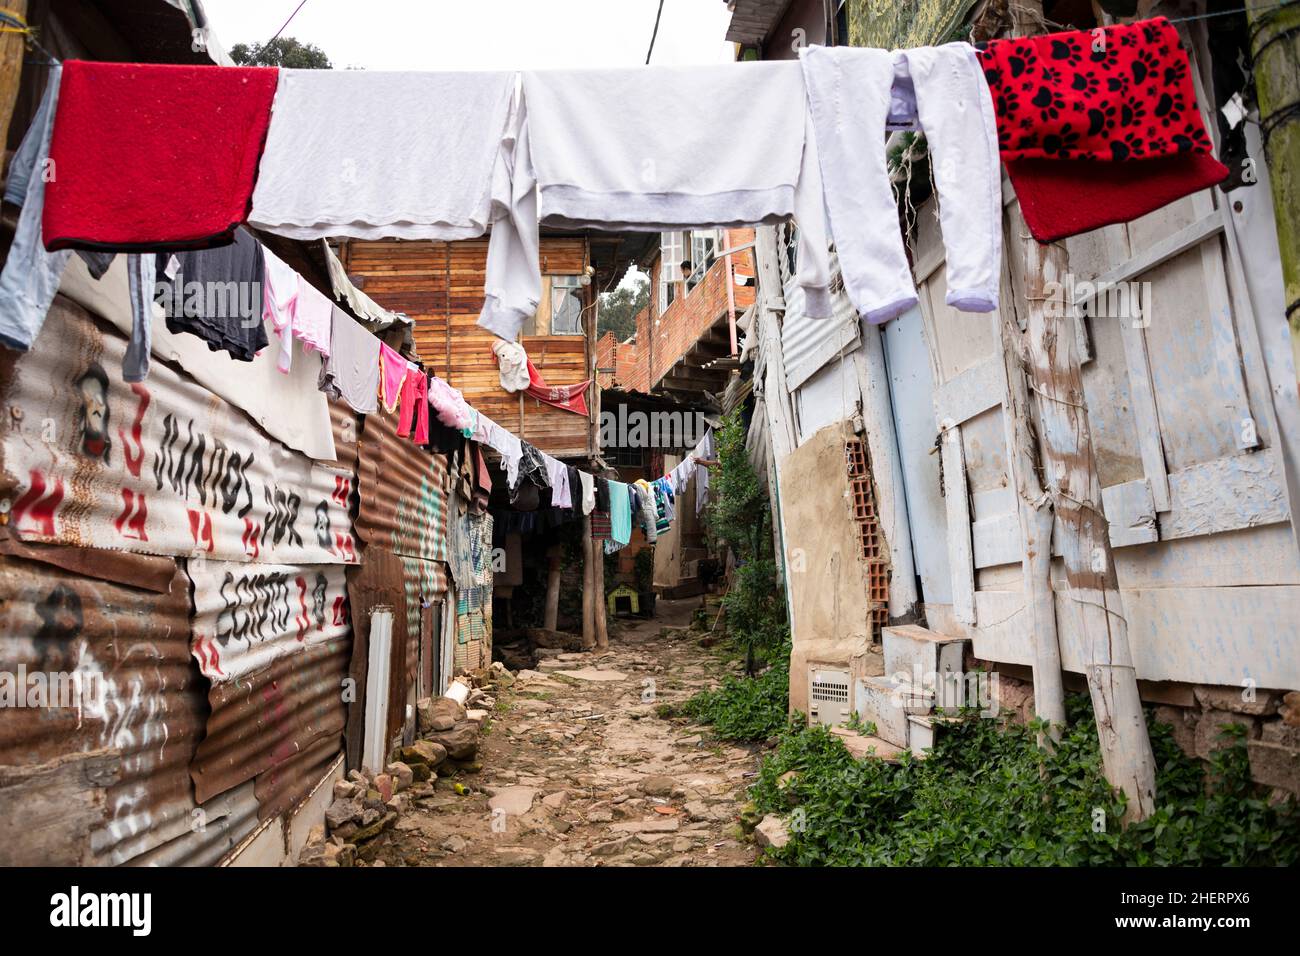 Laver sécher dans une allée parmi les cabanes de ville miteuse, dans le quartier célèbre de Barrio Egipto, Bogota, Colombie, Amérique du Sud. Banque D'Images